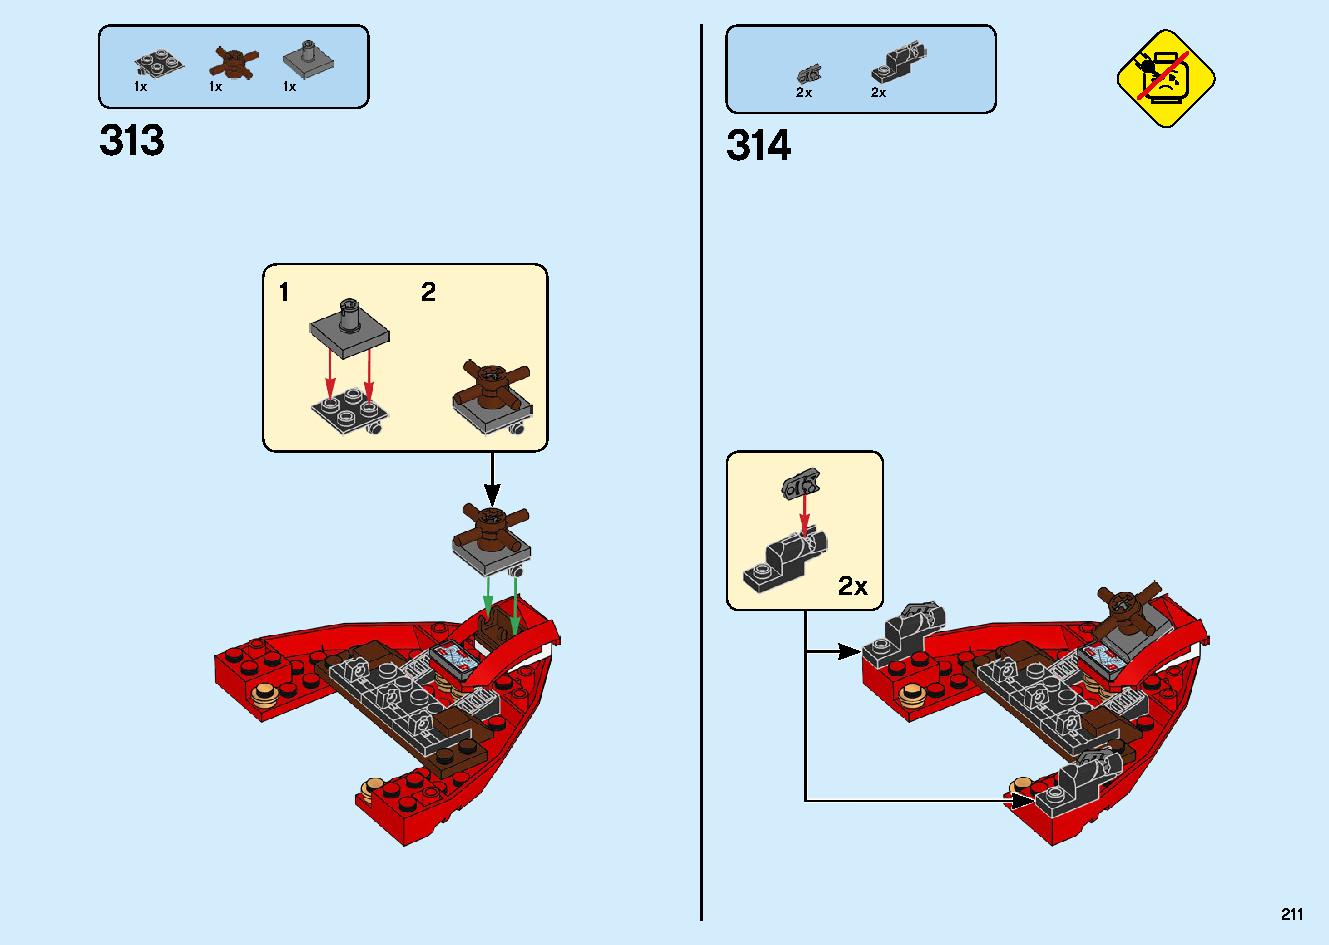 陸上戦艦バウンティ号 70677 レゴの商品情報 レゴの説明書・組立方法 211 page